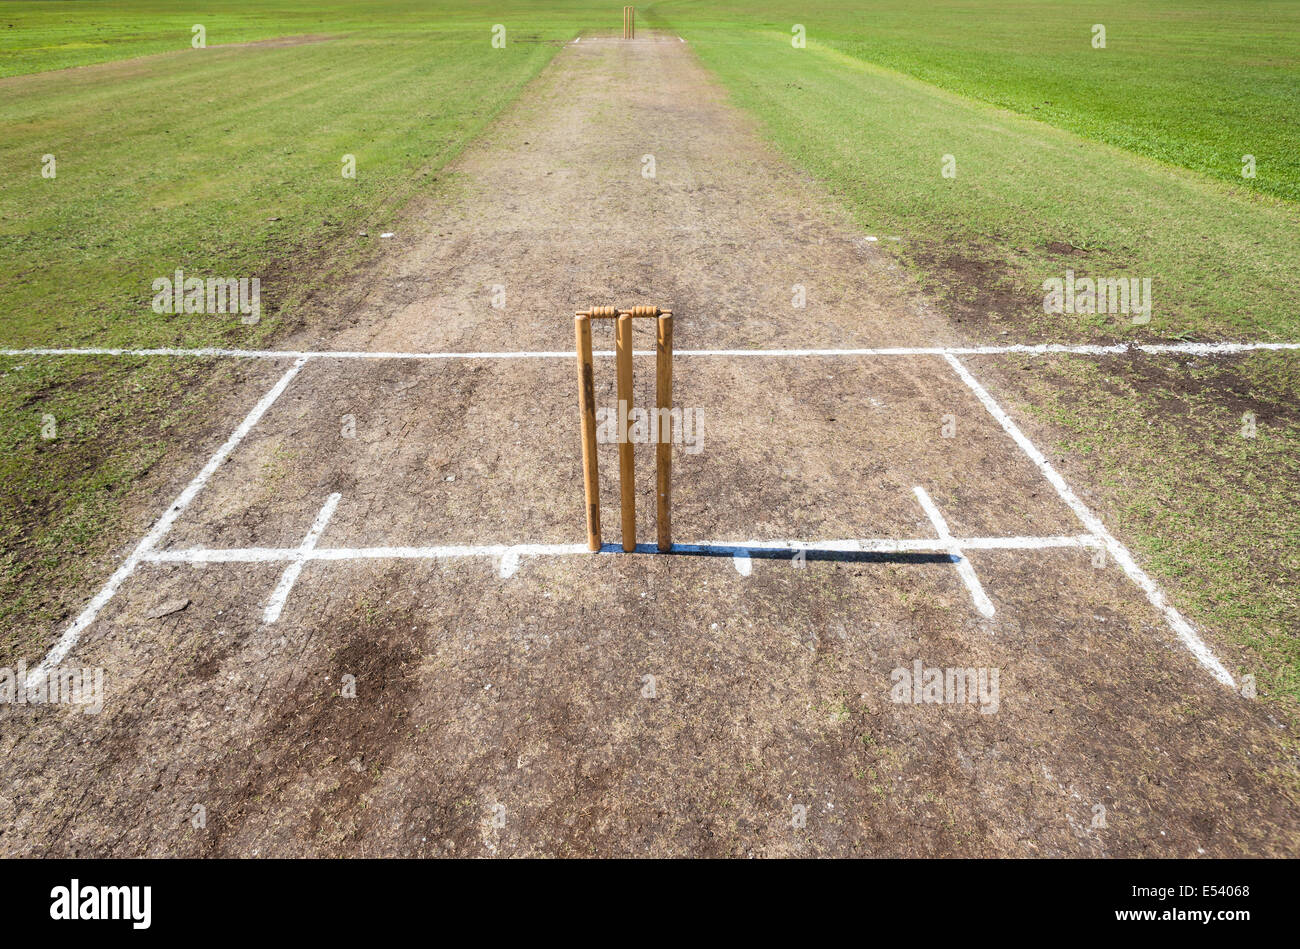 Campo da Cricket venue closeup photo giocando la superficie primitiva con wickets e batting bowling linee marcate in bianco. Foto Stock